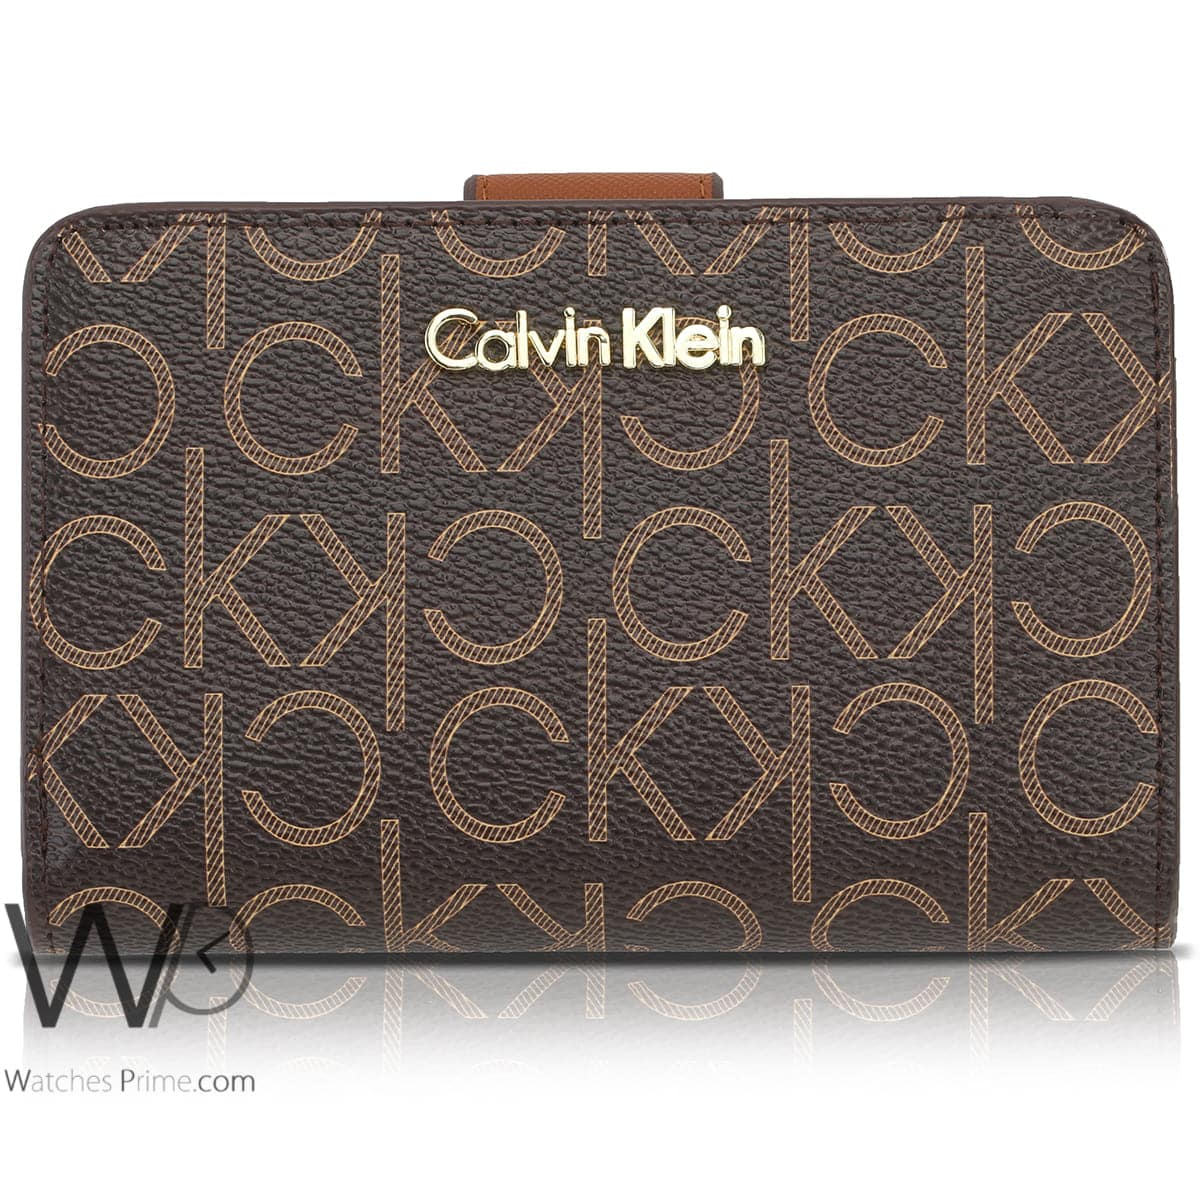 Calvin Klein CK Wallet Original Brown women | Watches Prime